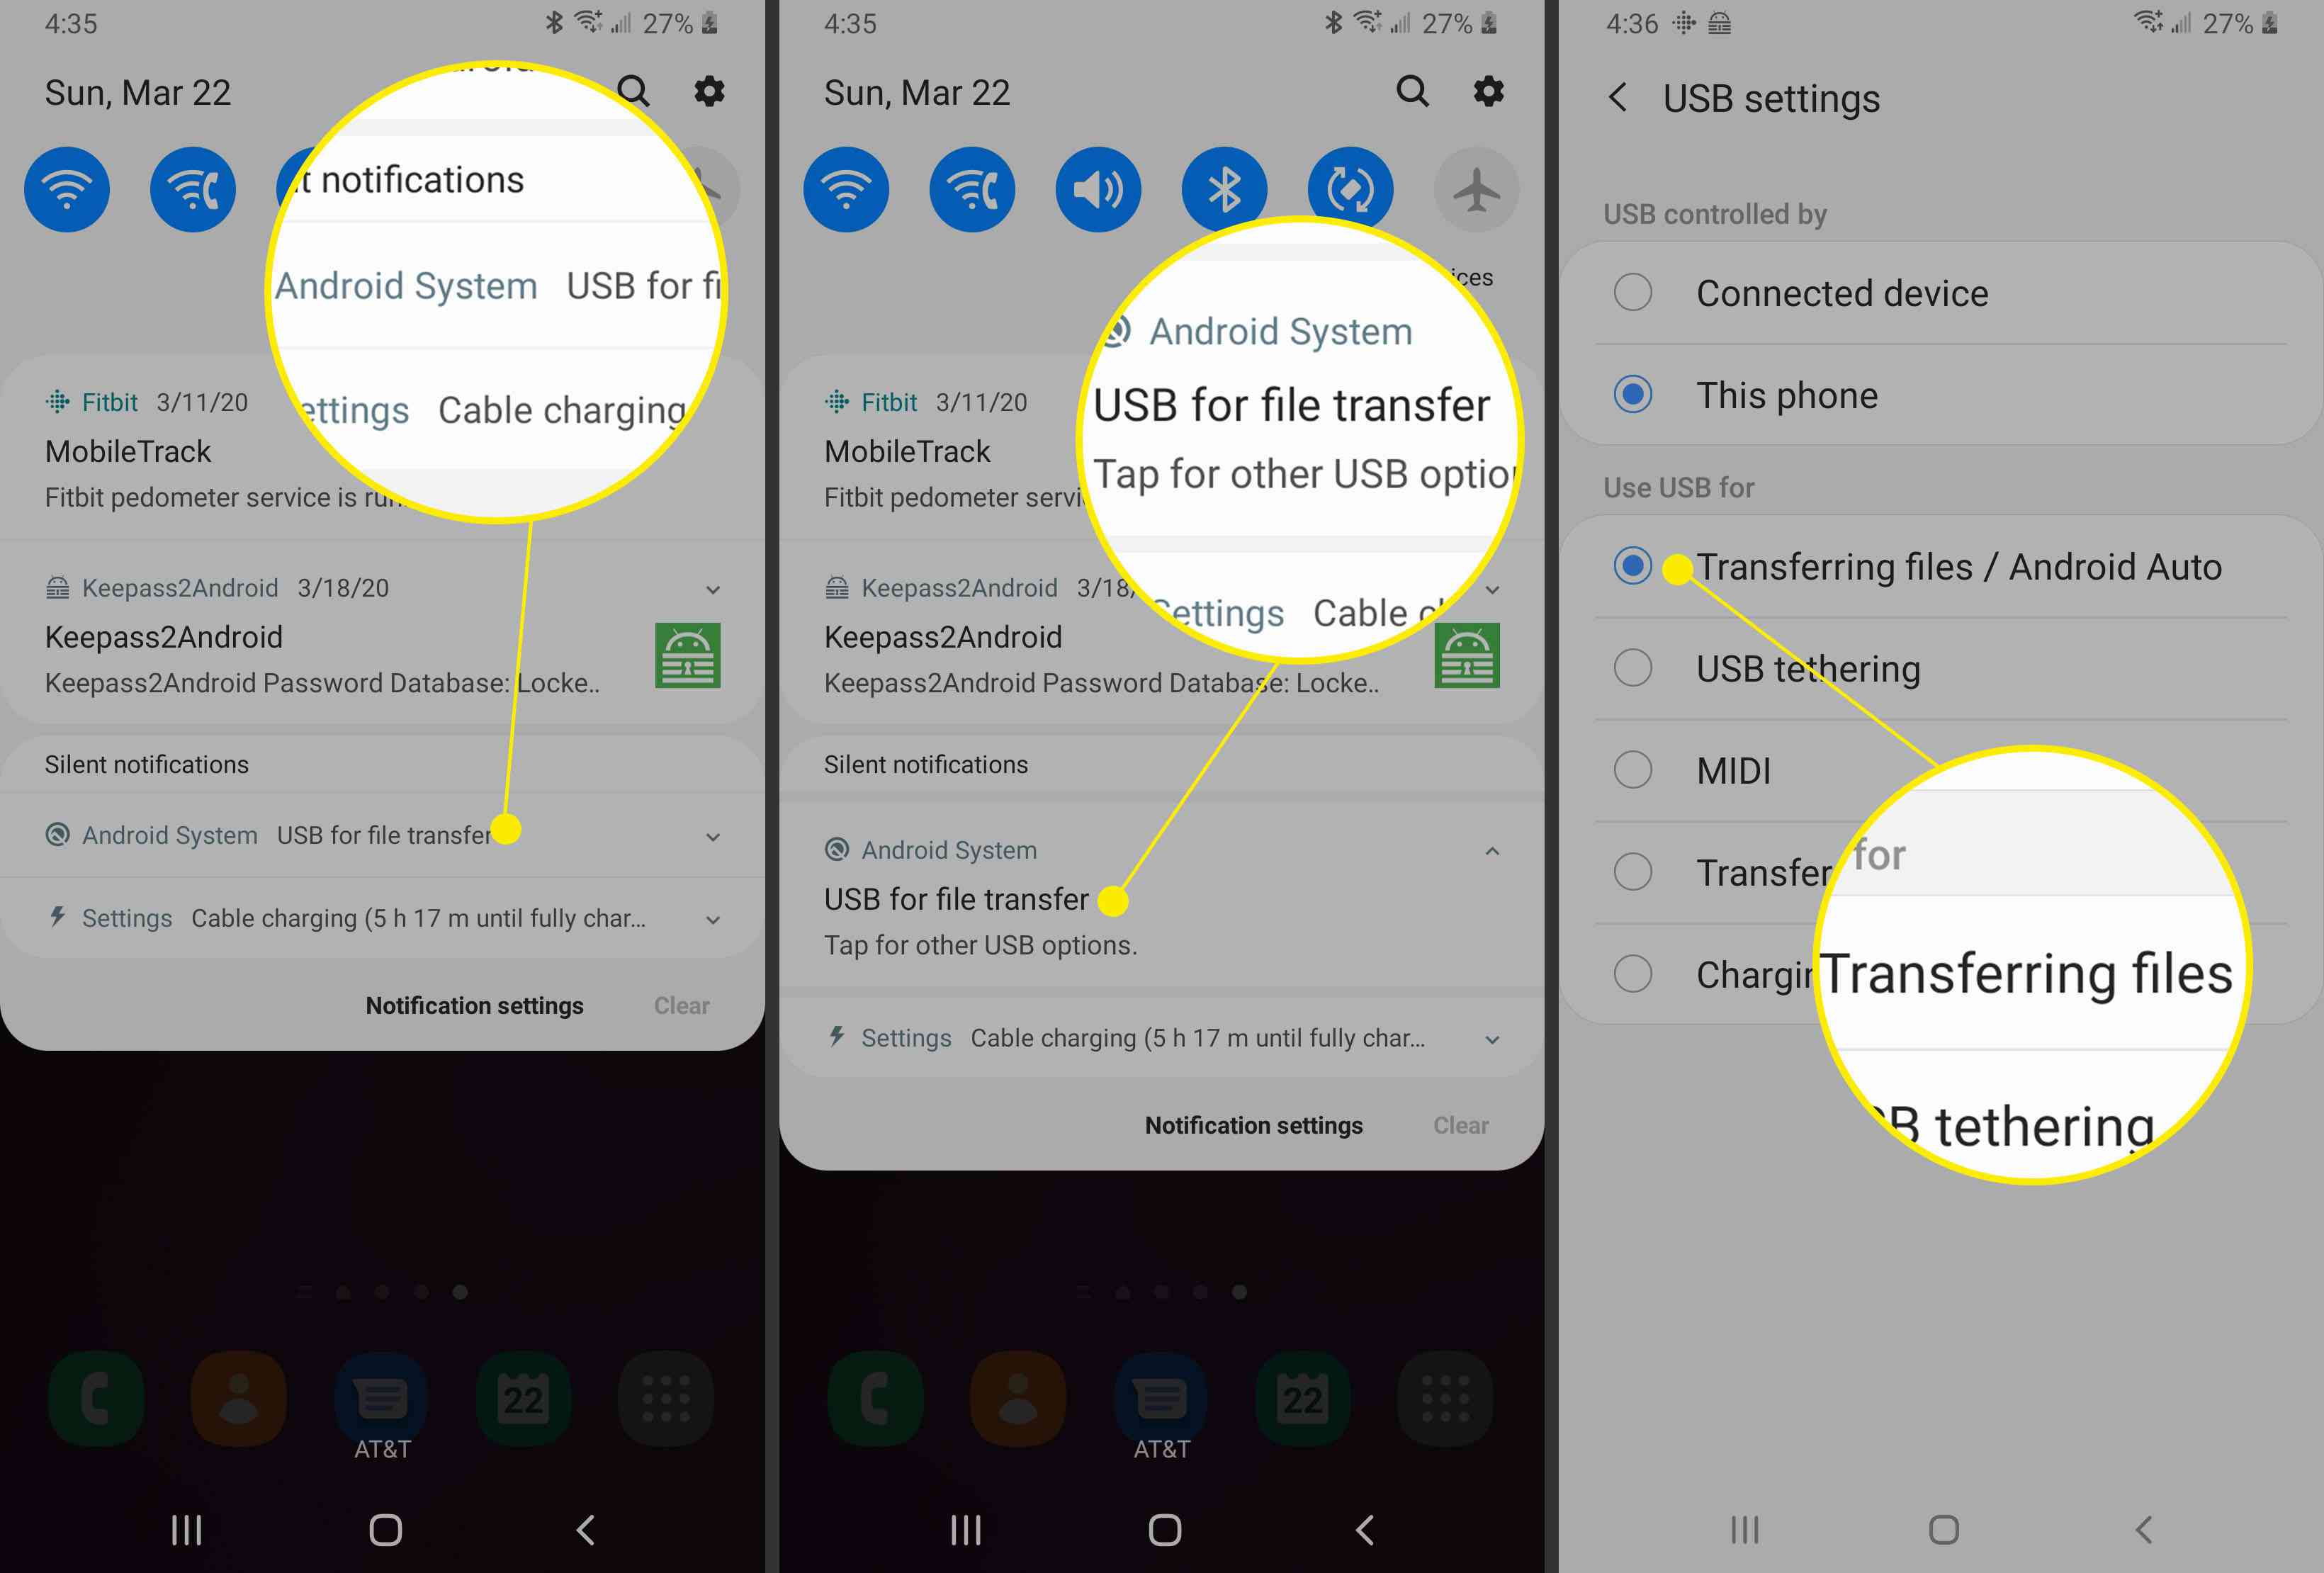 Schermafbeeldingen van een Android-apparaat die laten zien hoe u instellingen voor delen via USB instelt